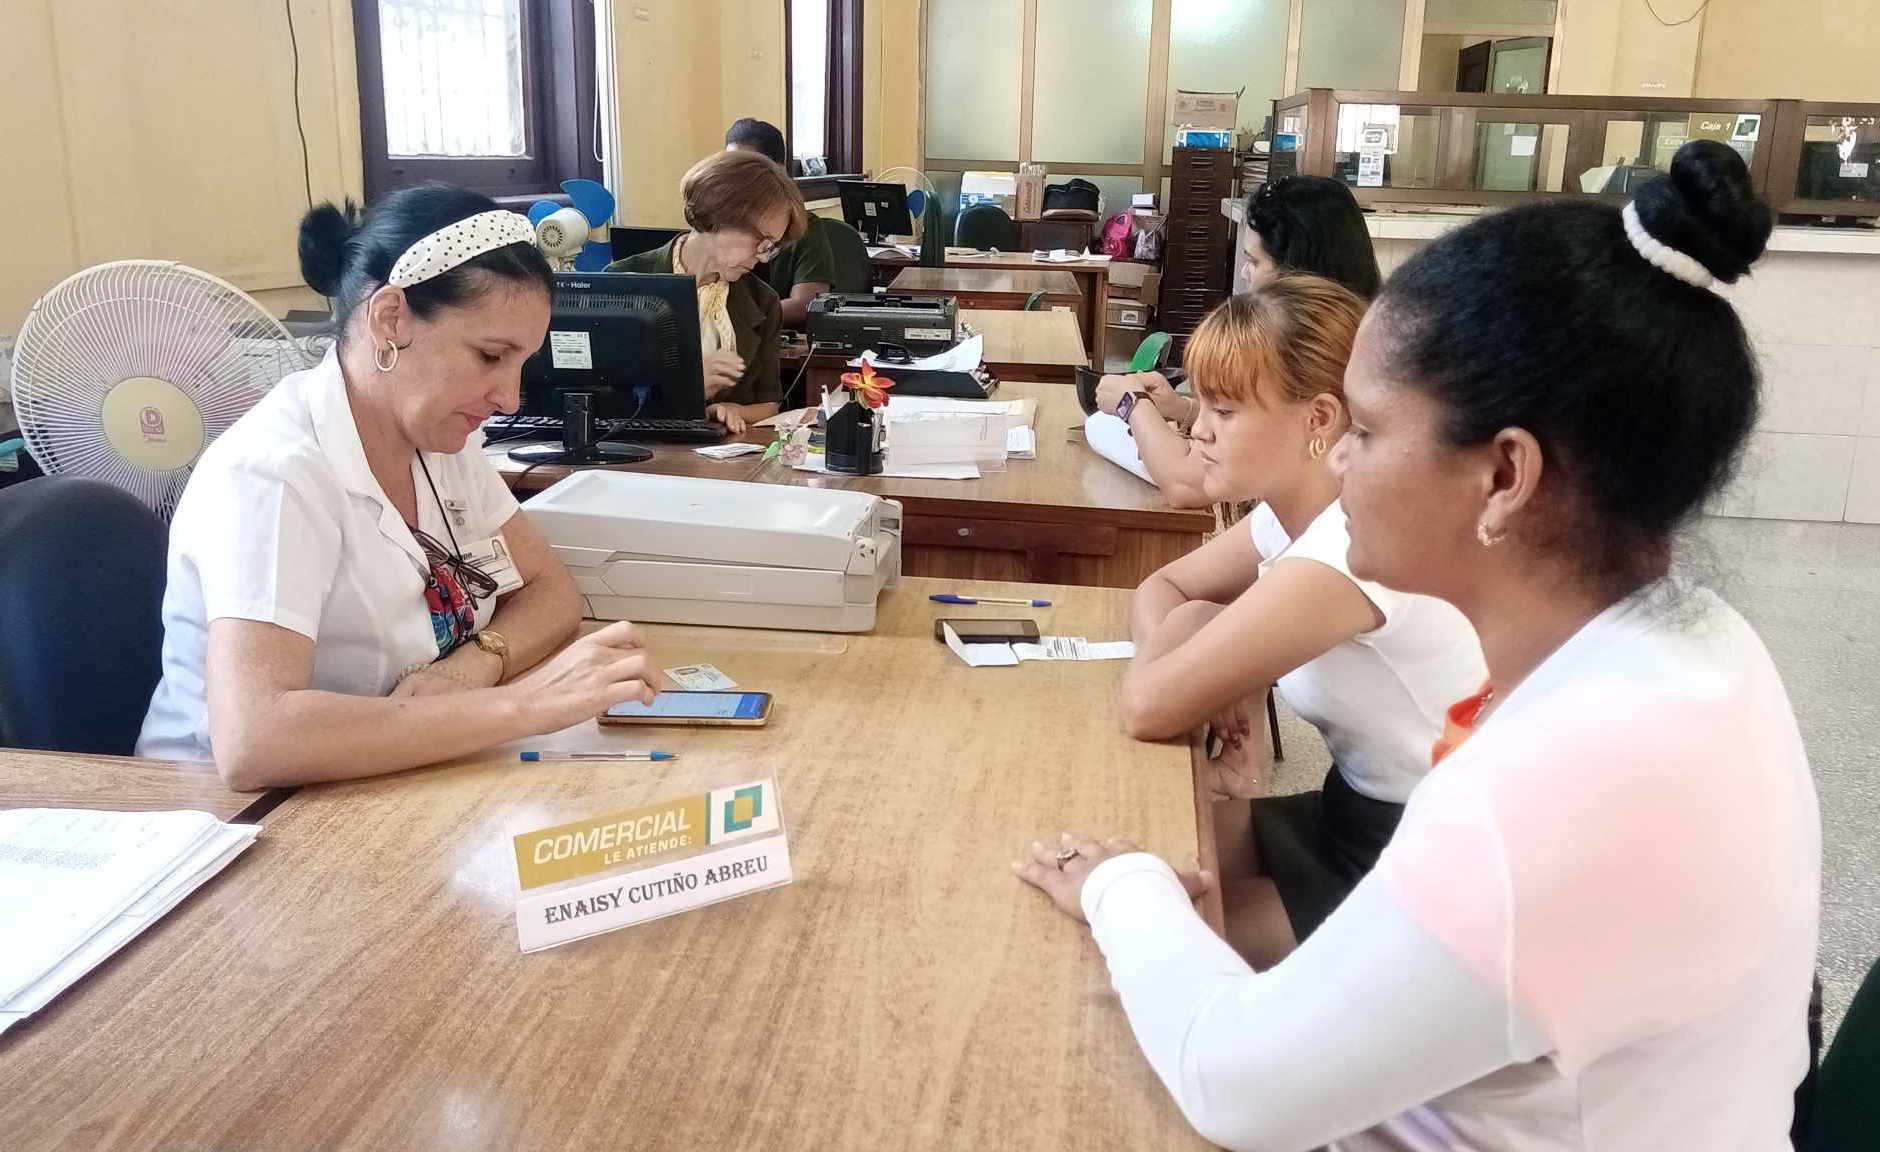 Les employés de banque de Camagüey poursuivent leur travail crucial (+ Photo) 